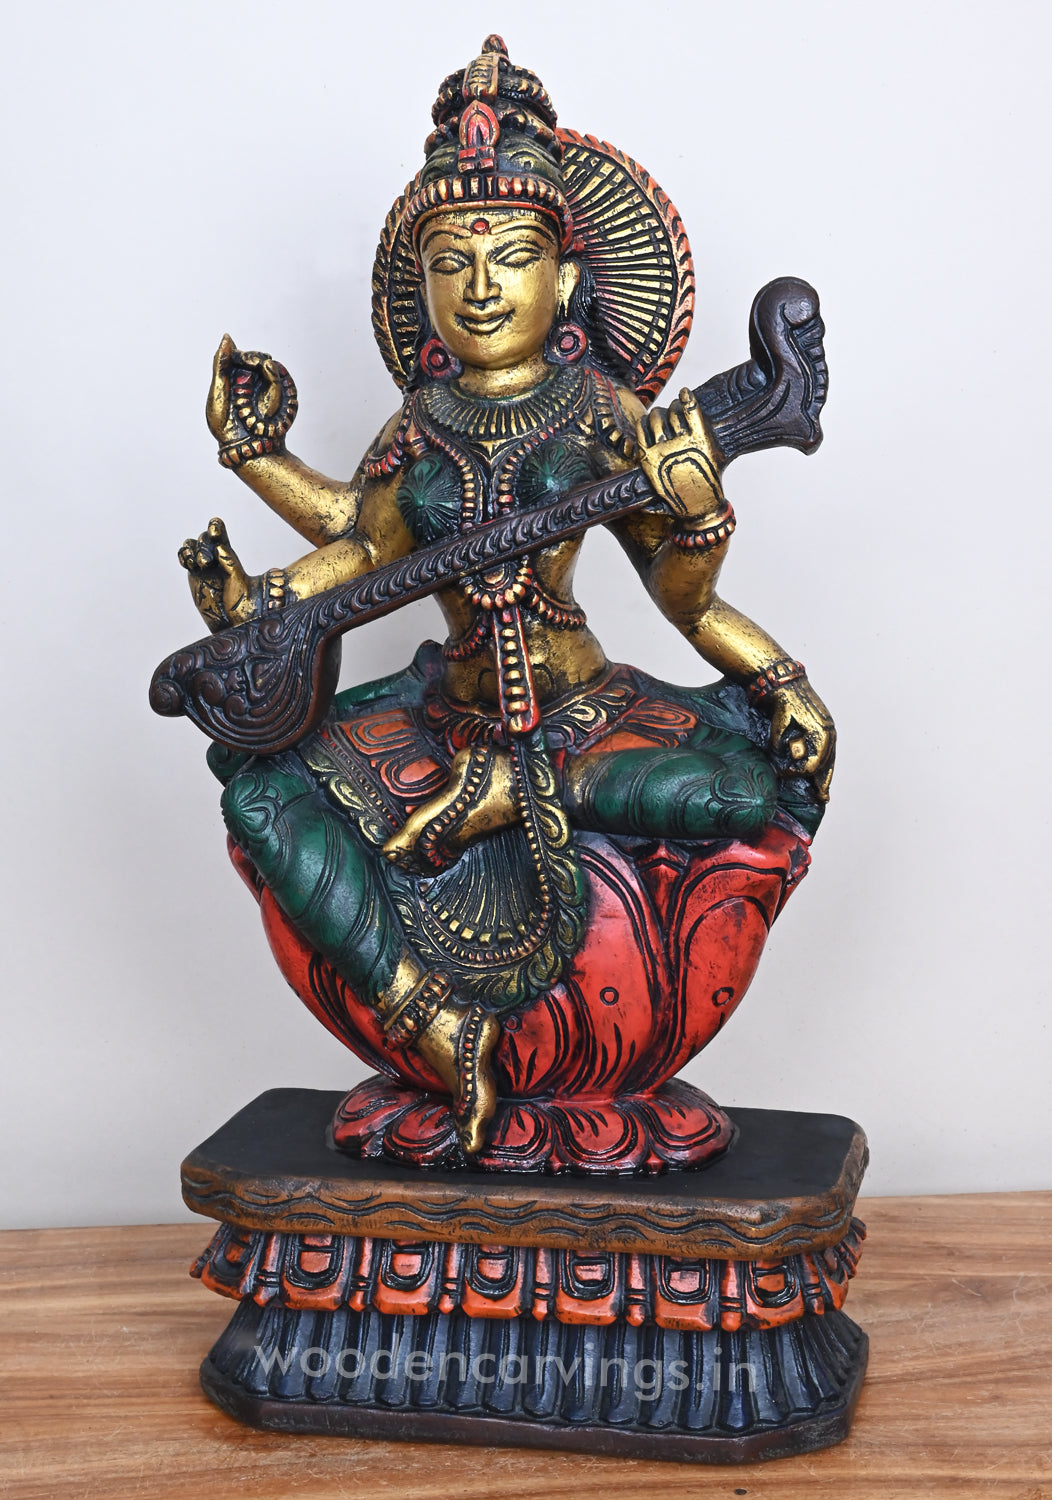 Smiling Goddess Saraswathi Seated on Red Lotus Beautiful Wooden Sculpture 24"